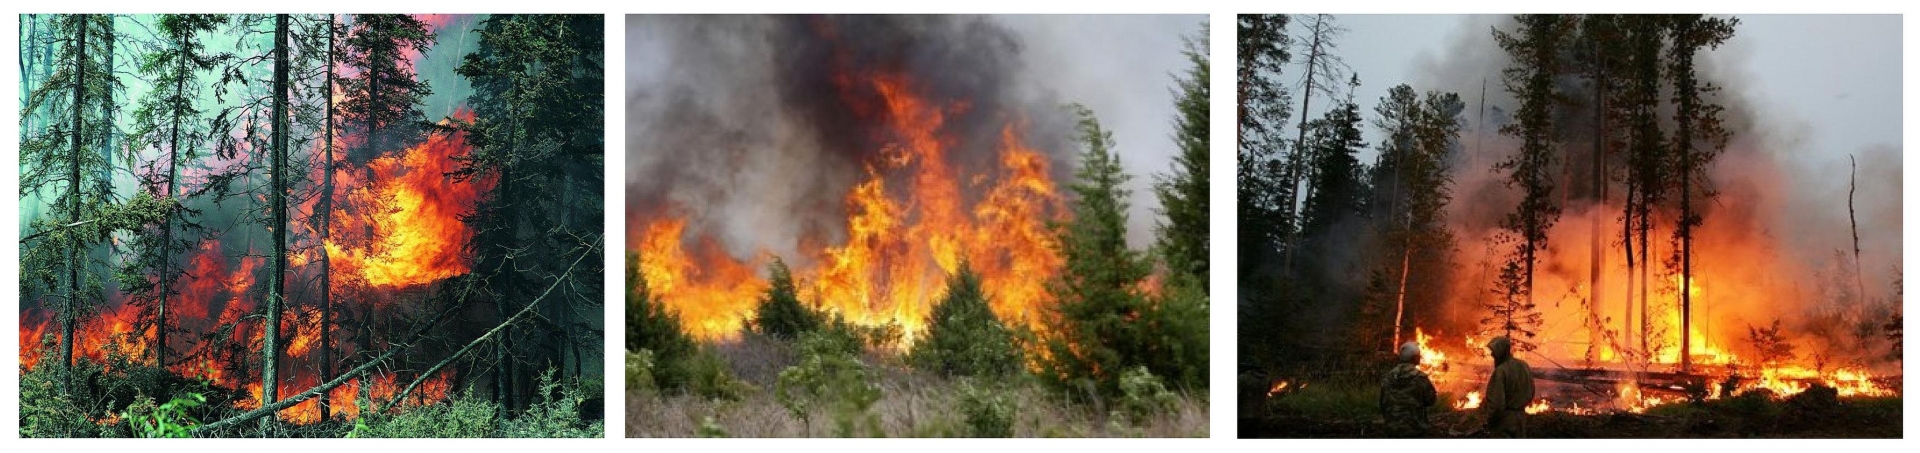 Особенности природного пожара. Природные пожары ЧС. Лесной пожар коллаж. Природные пожары коллаж. Пожар в разных местах.